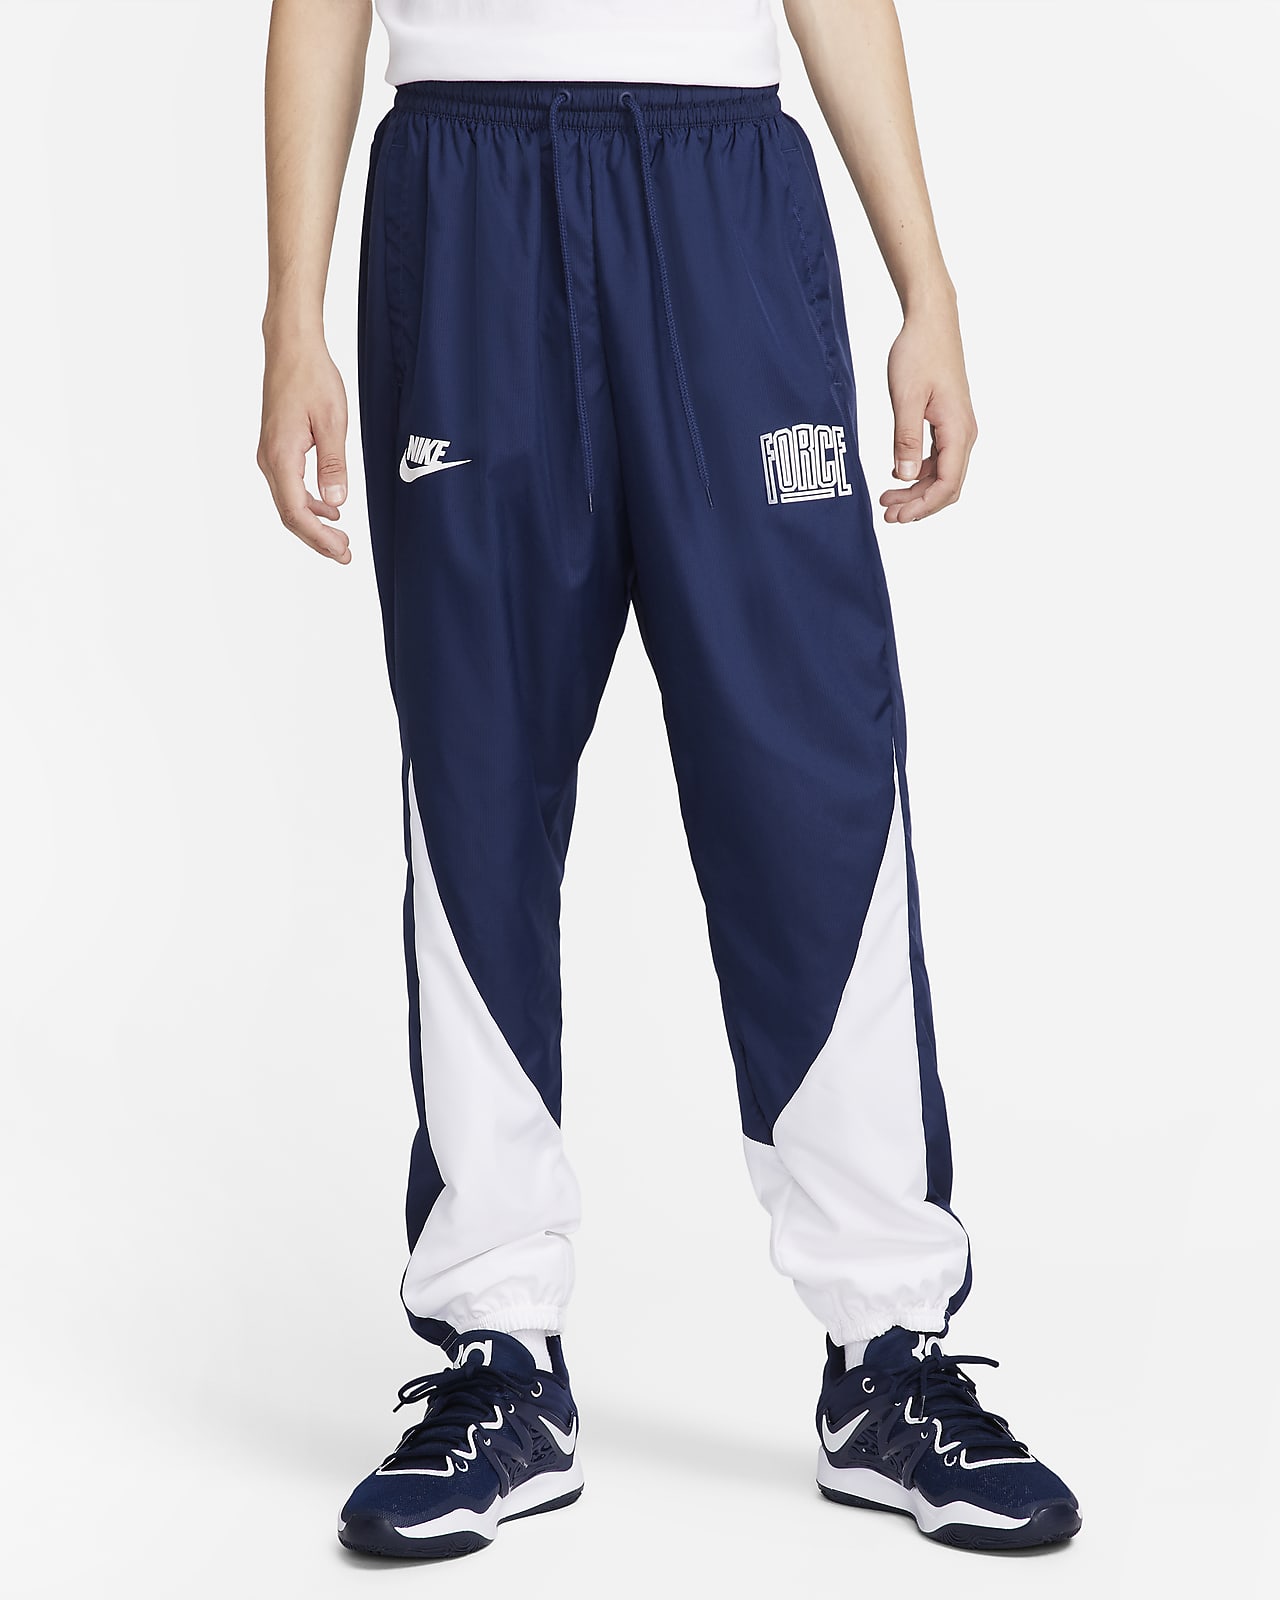 Nike Starting 5 Men's Basketball Pants